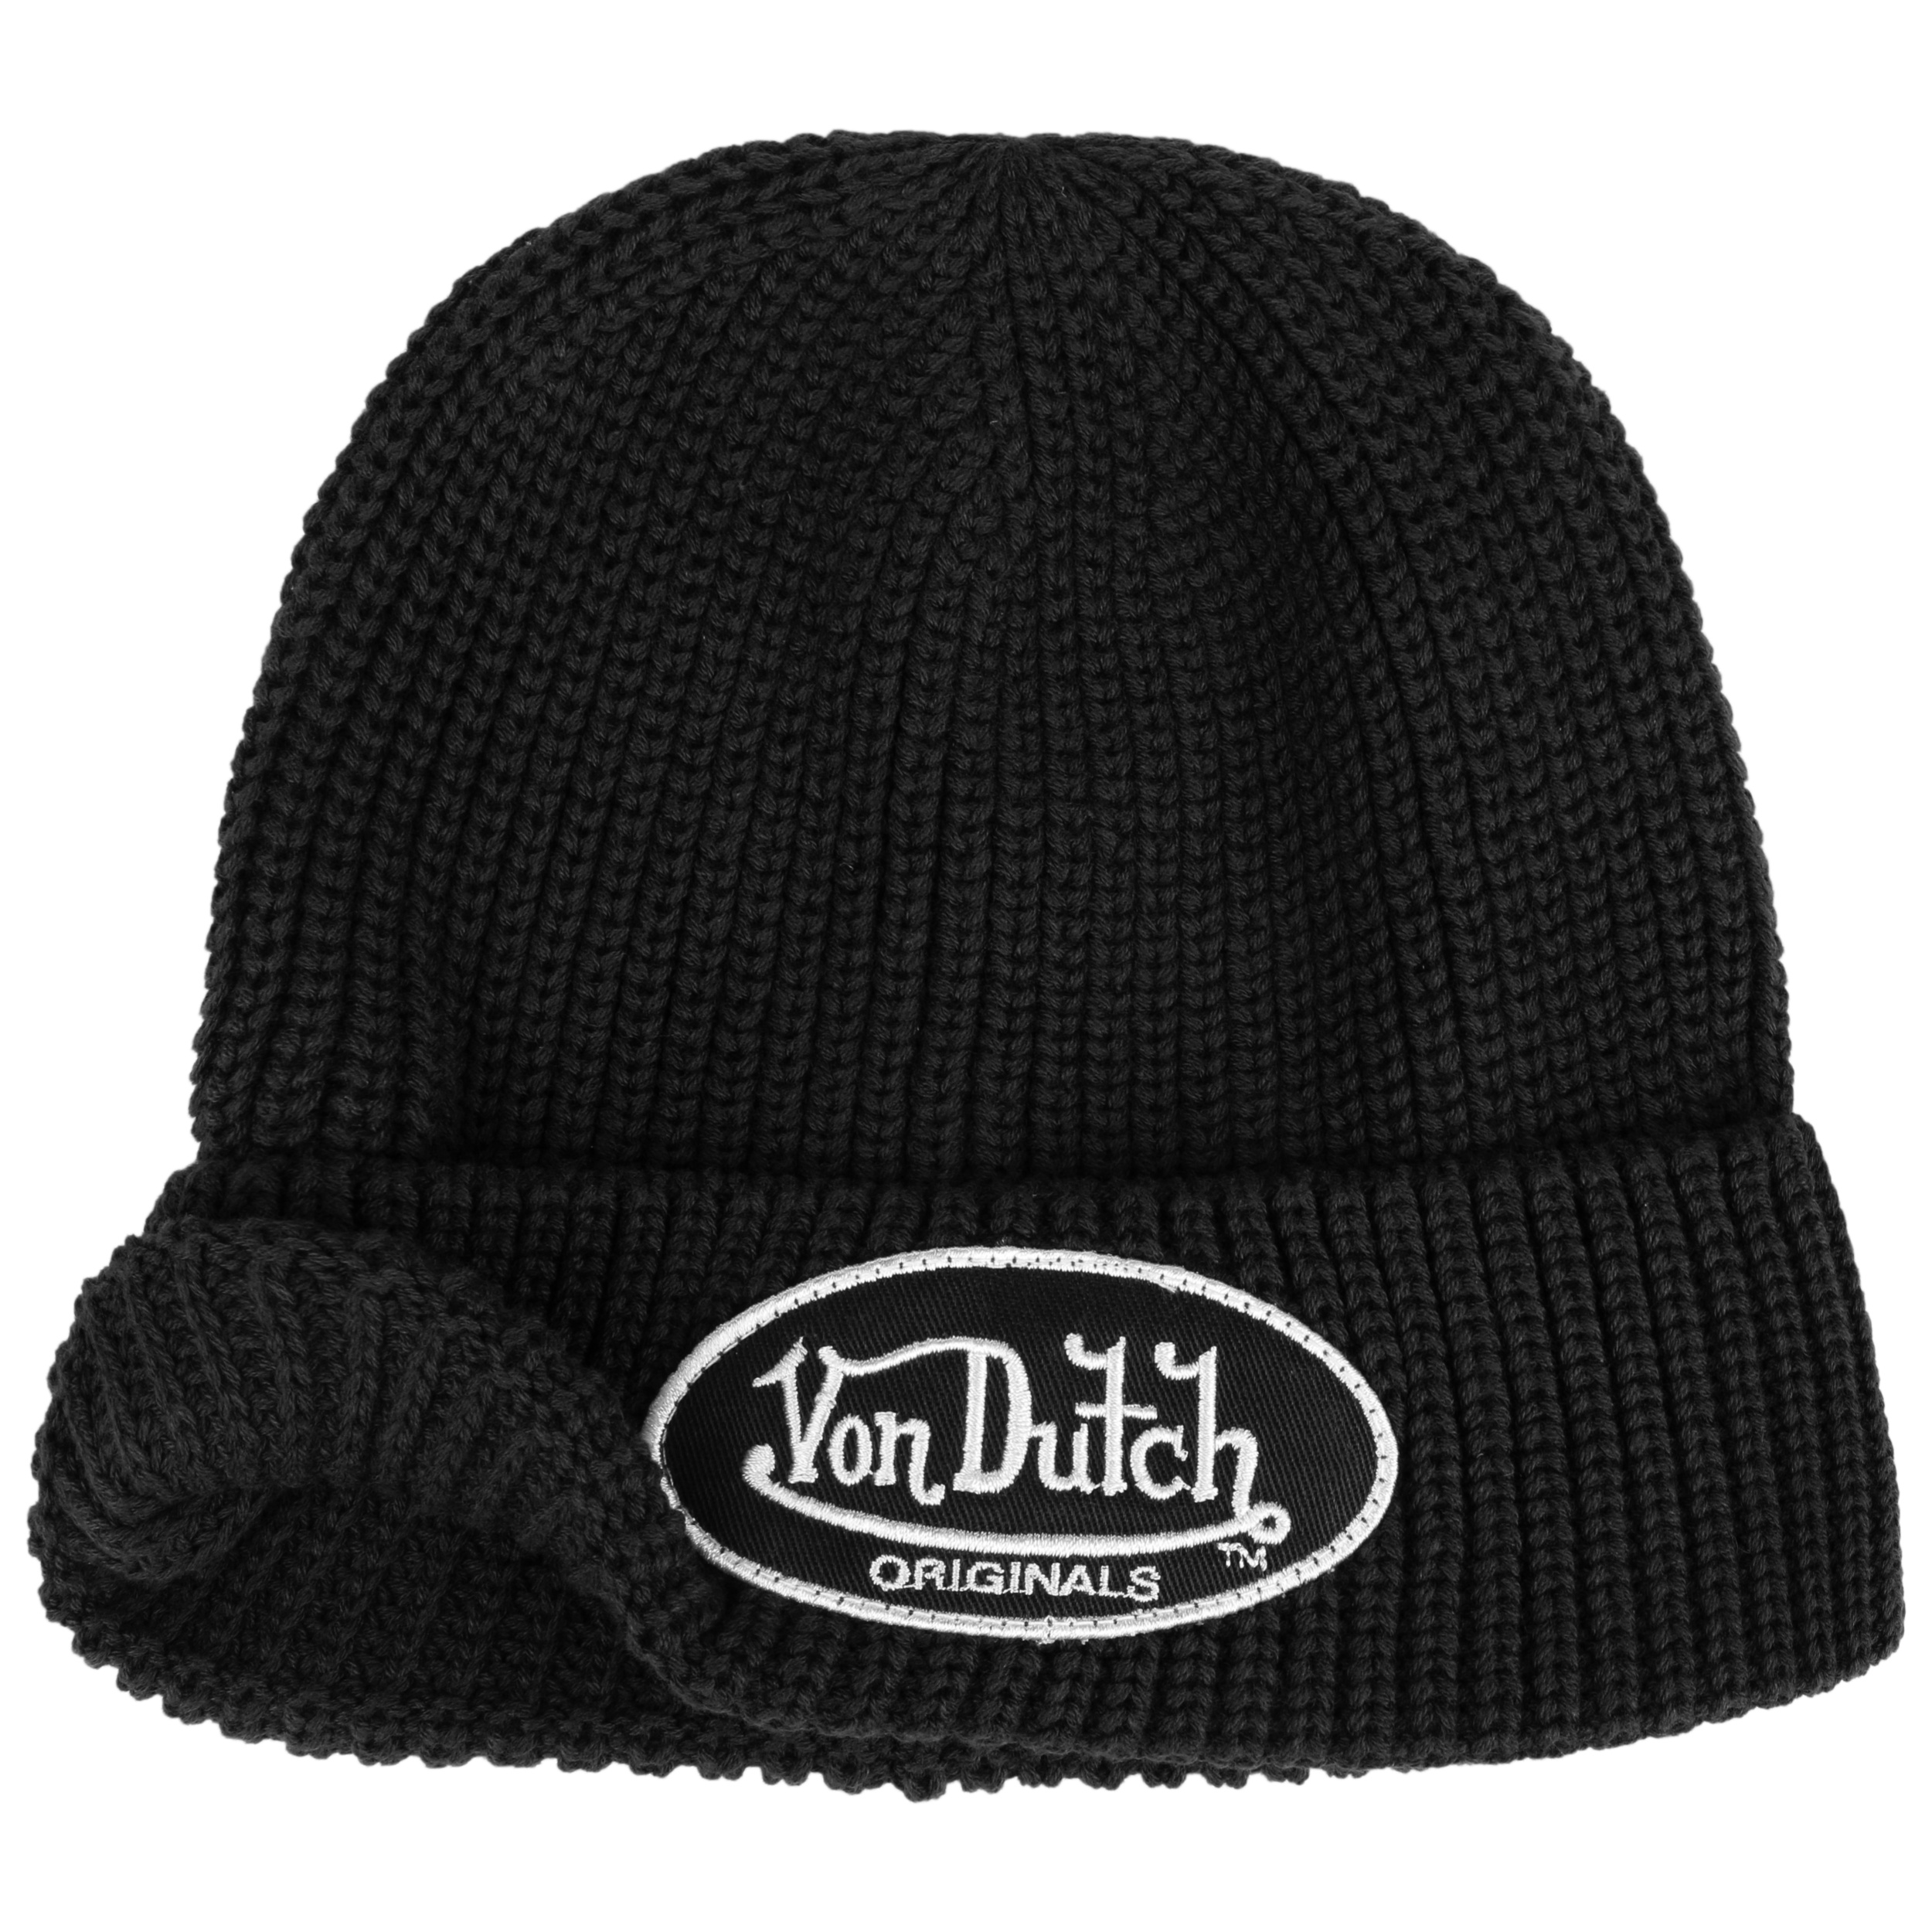 Von Dutch ビーニー - 帽子